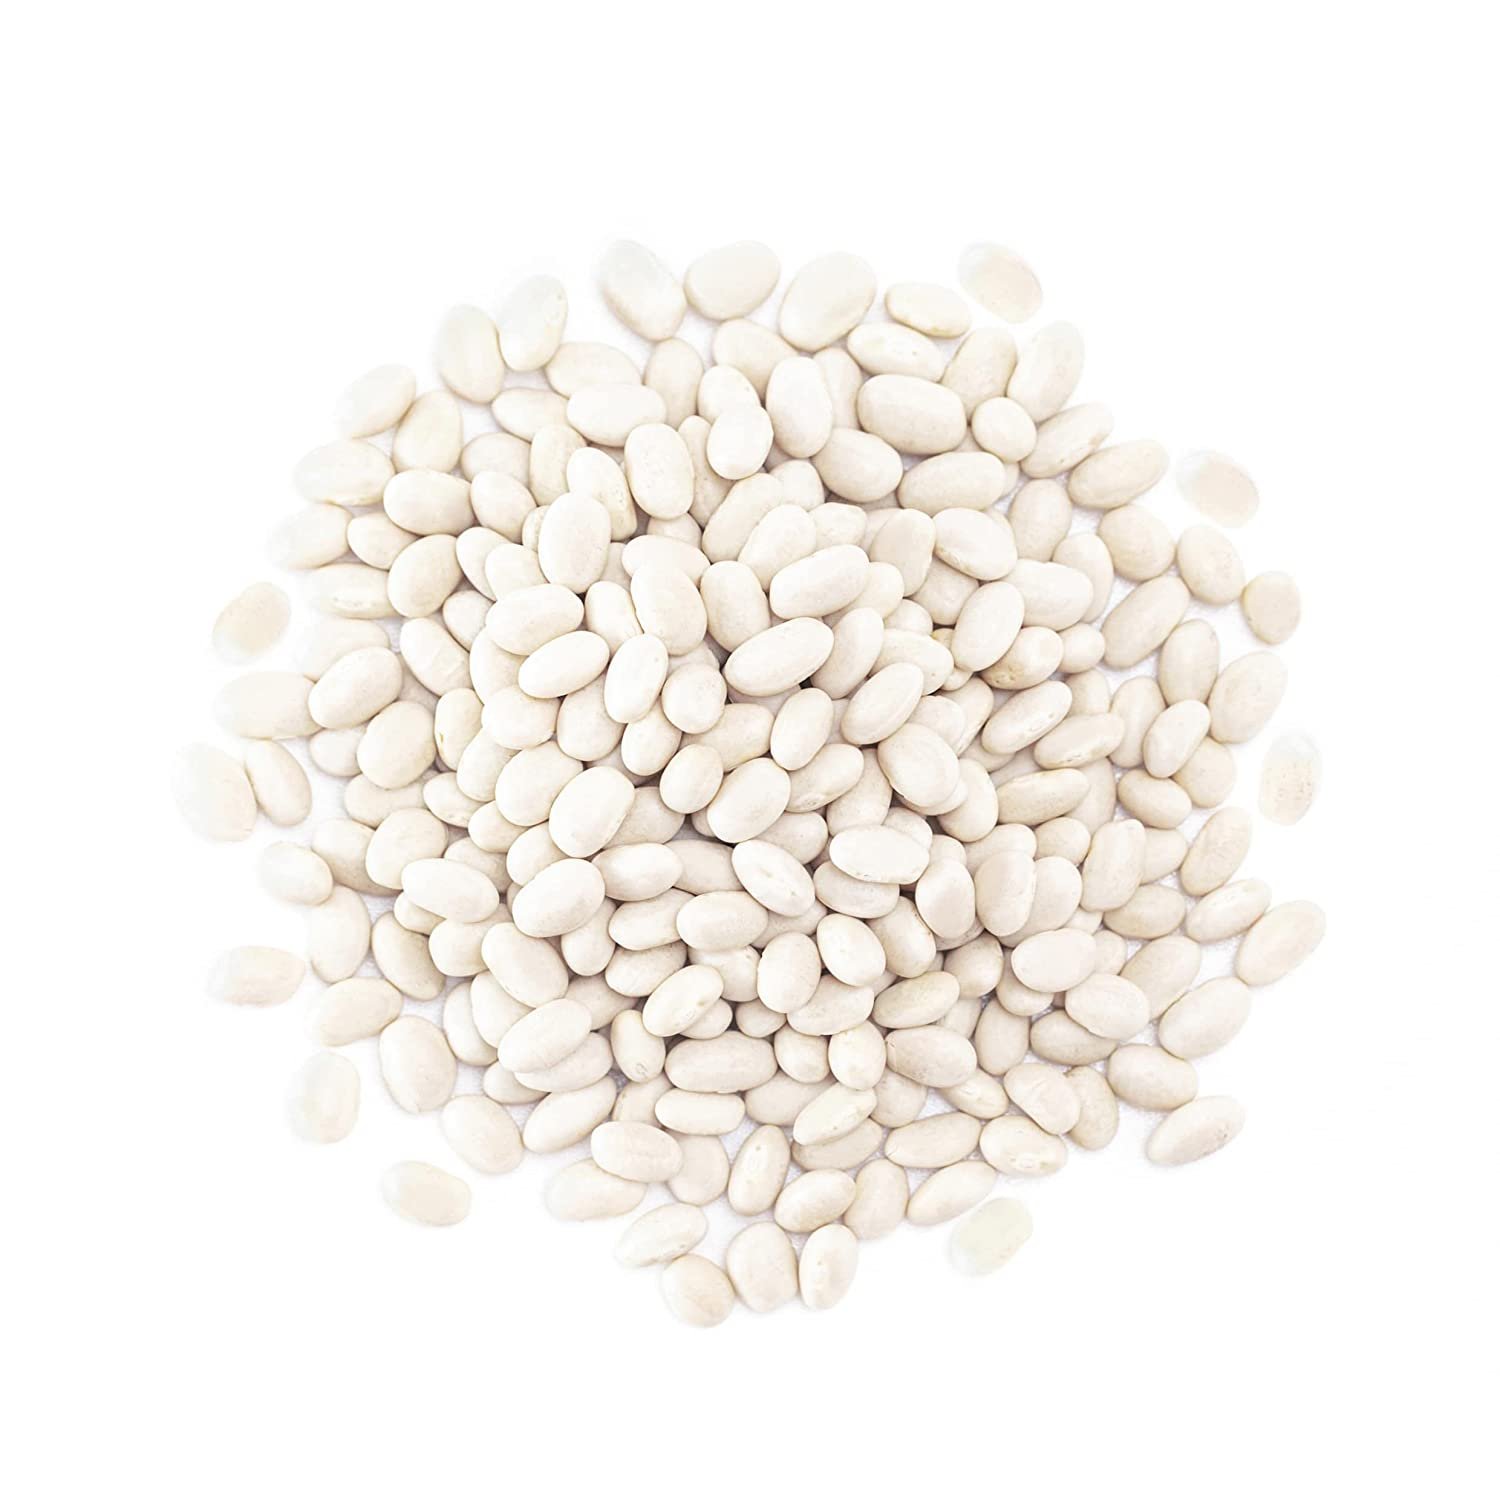 Dried White Beans